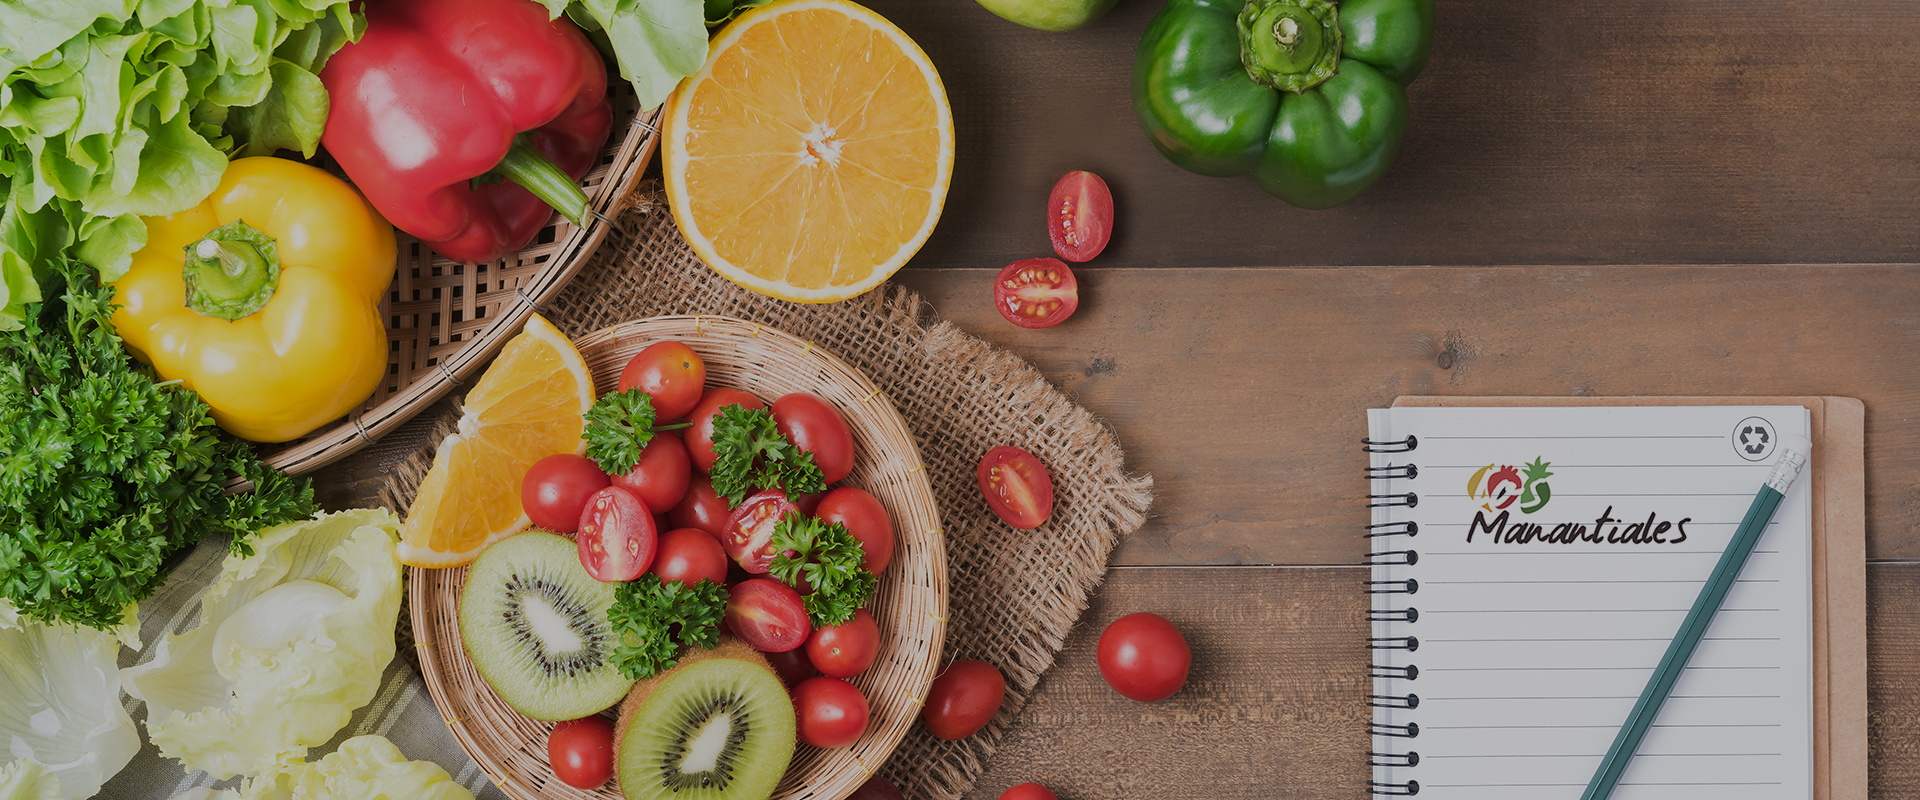 tienda online frutas y verduras torremolinos